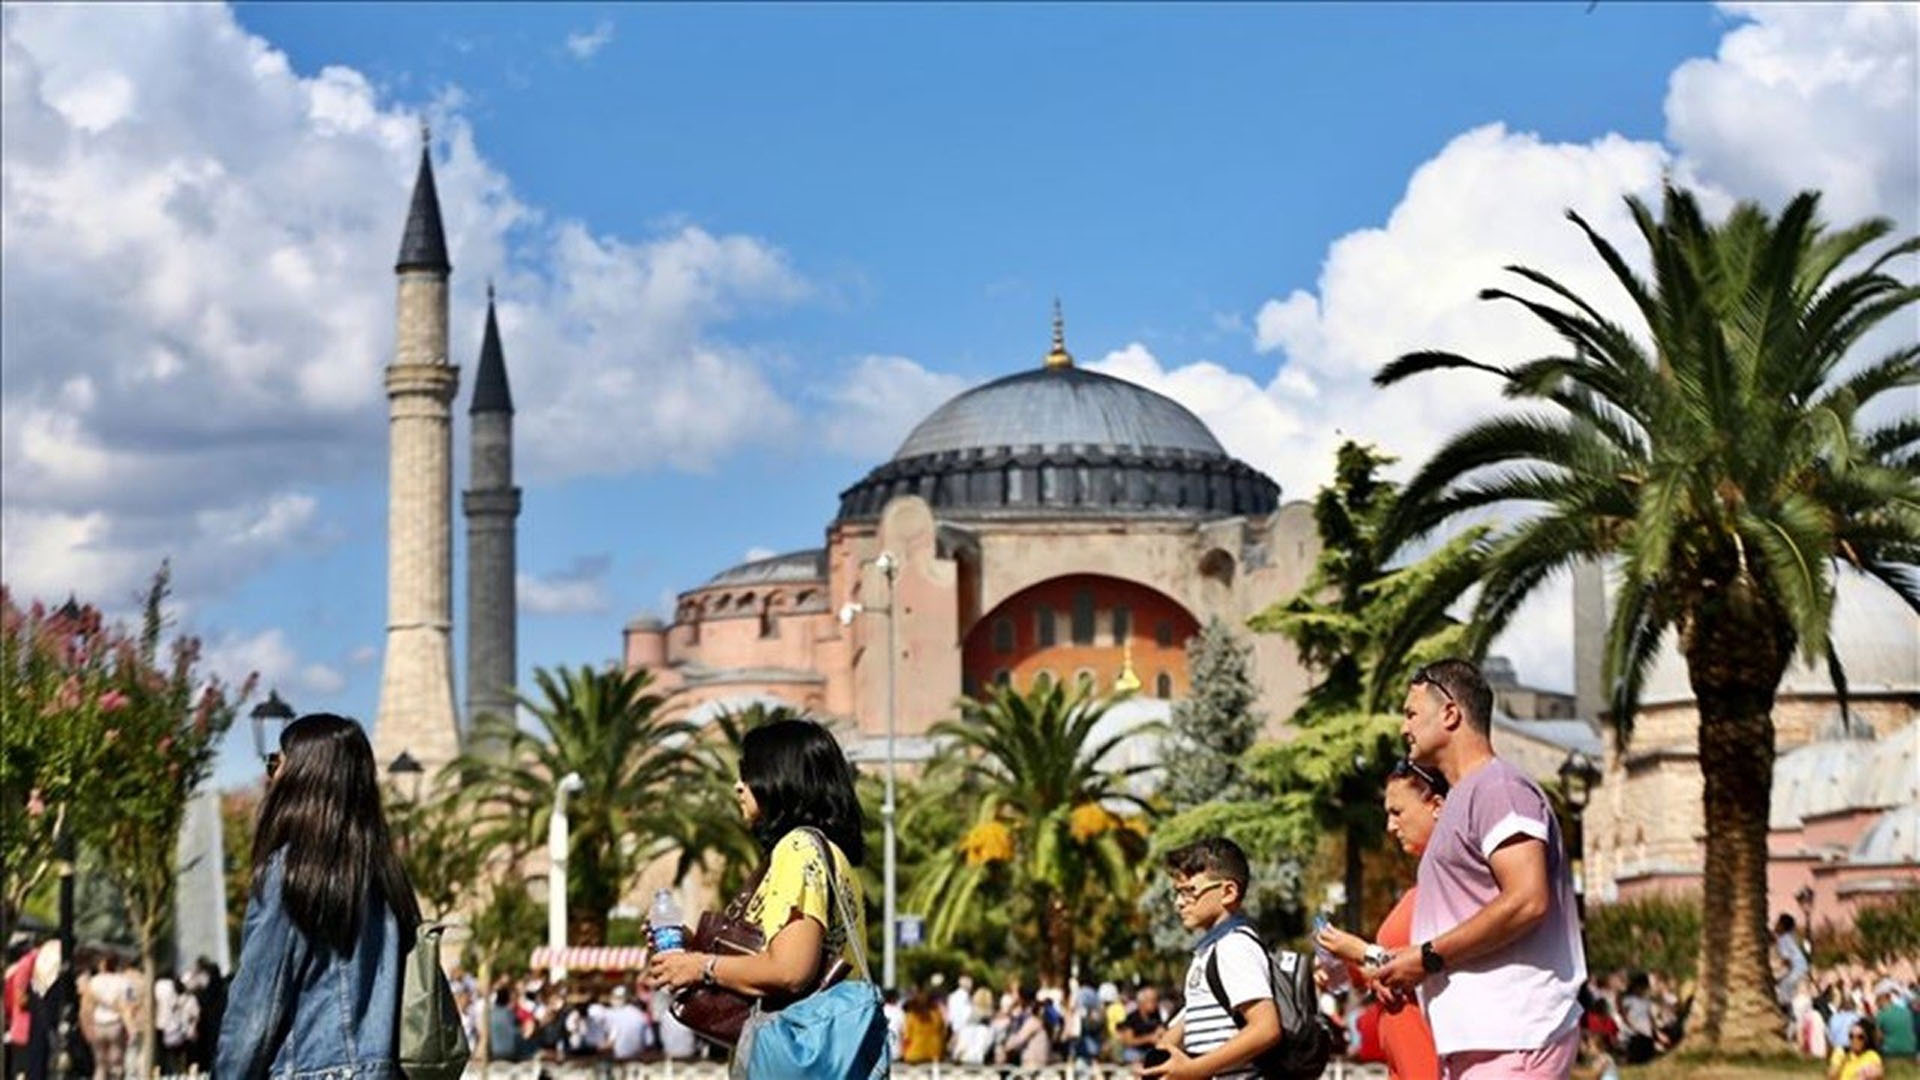 Türkiye'ye gelen turist sayısı her geçen yıl artmaya devam ediyor! Ziyaretçi sayısı yüzde 300 arttı!